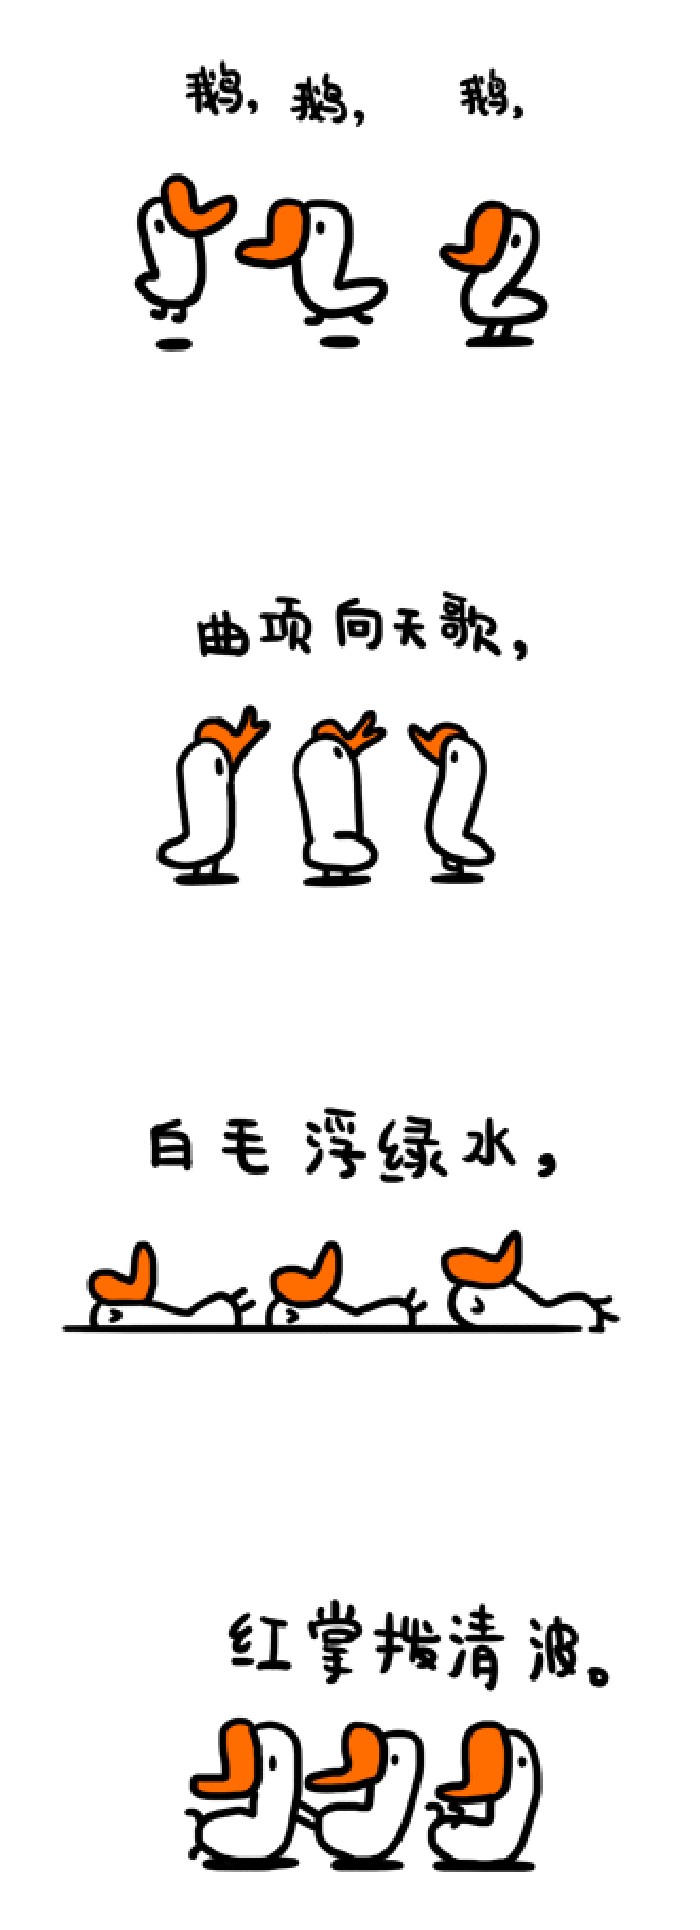 萌萌哒 卡通 可爱 小鸭子